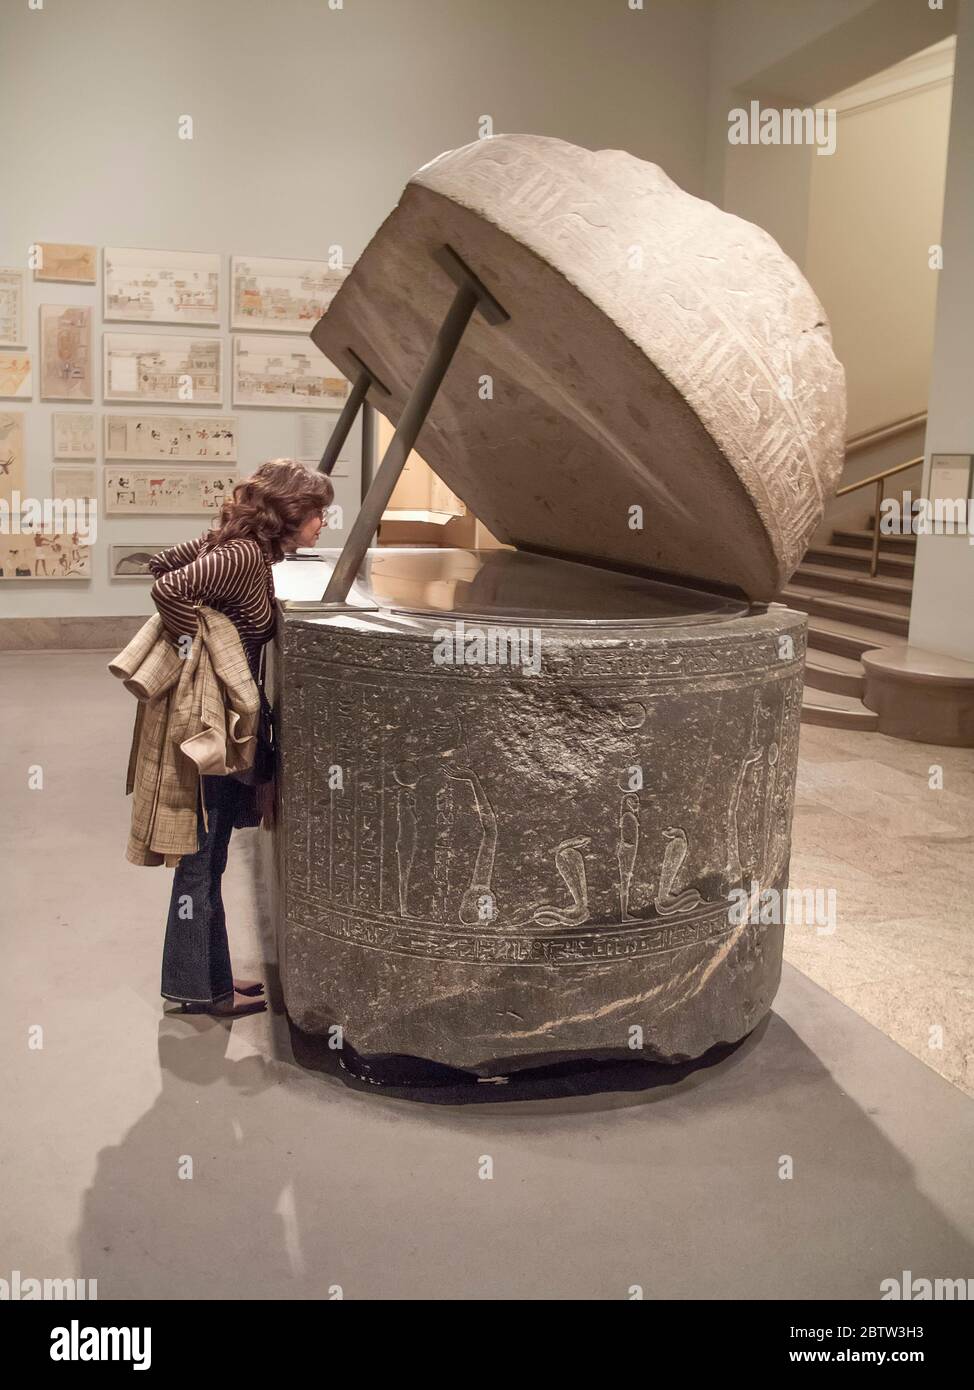 Femme regardant à l'intérieur d'un sarcophage égyptien ancien dans le Metropolitan Museum of Art, New York, Etats-Unis Banque D'Images